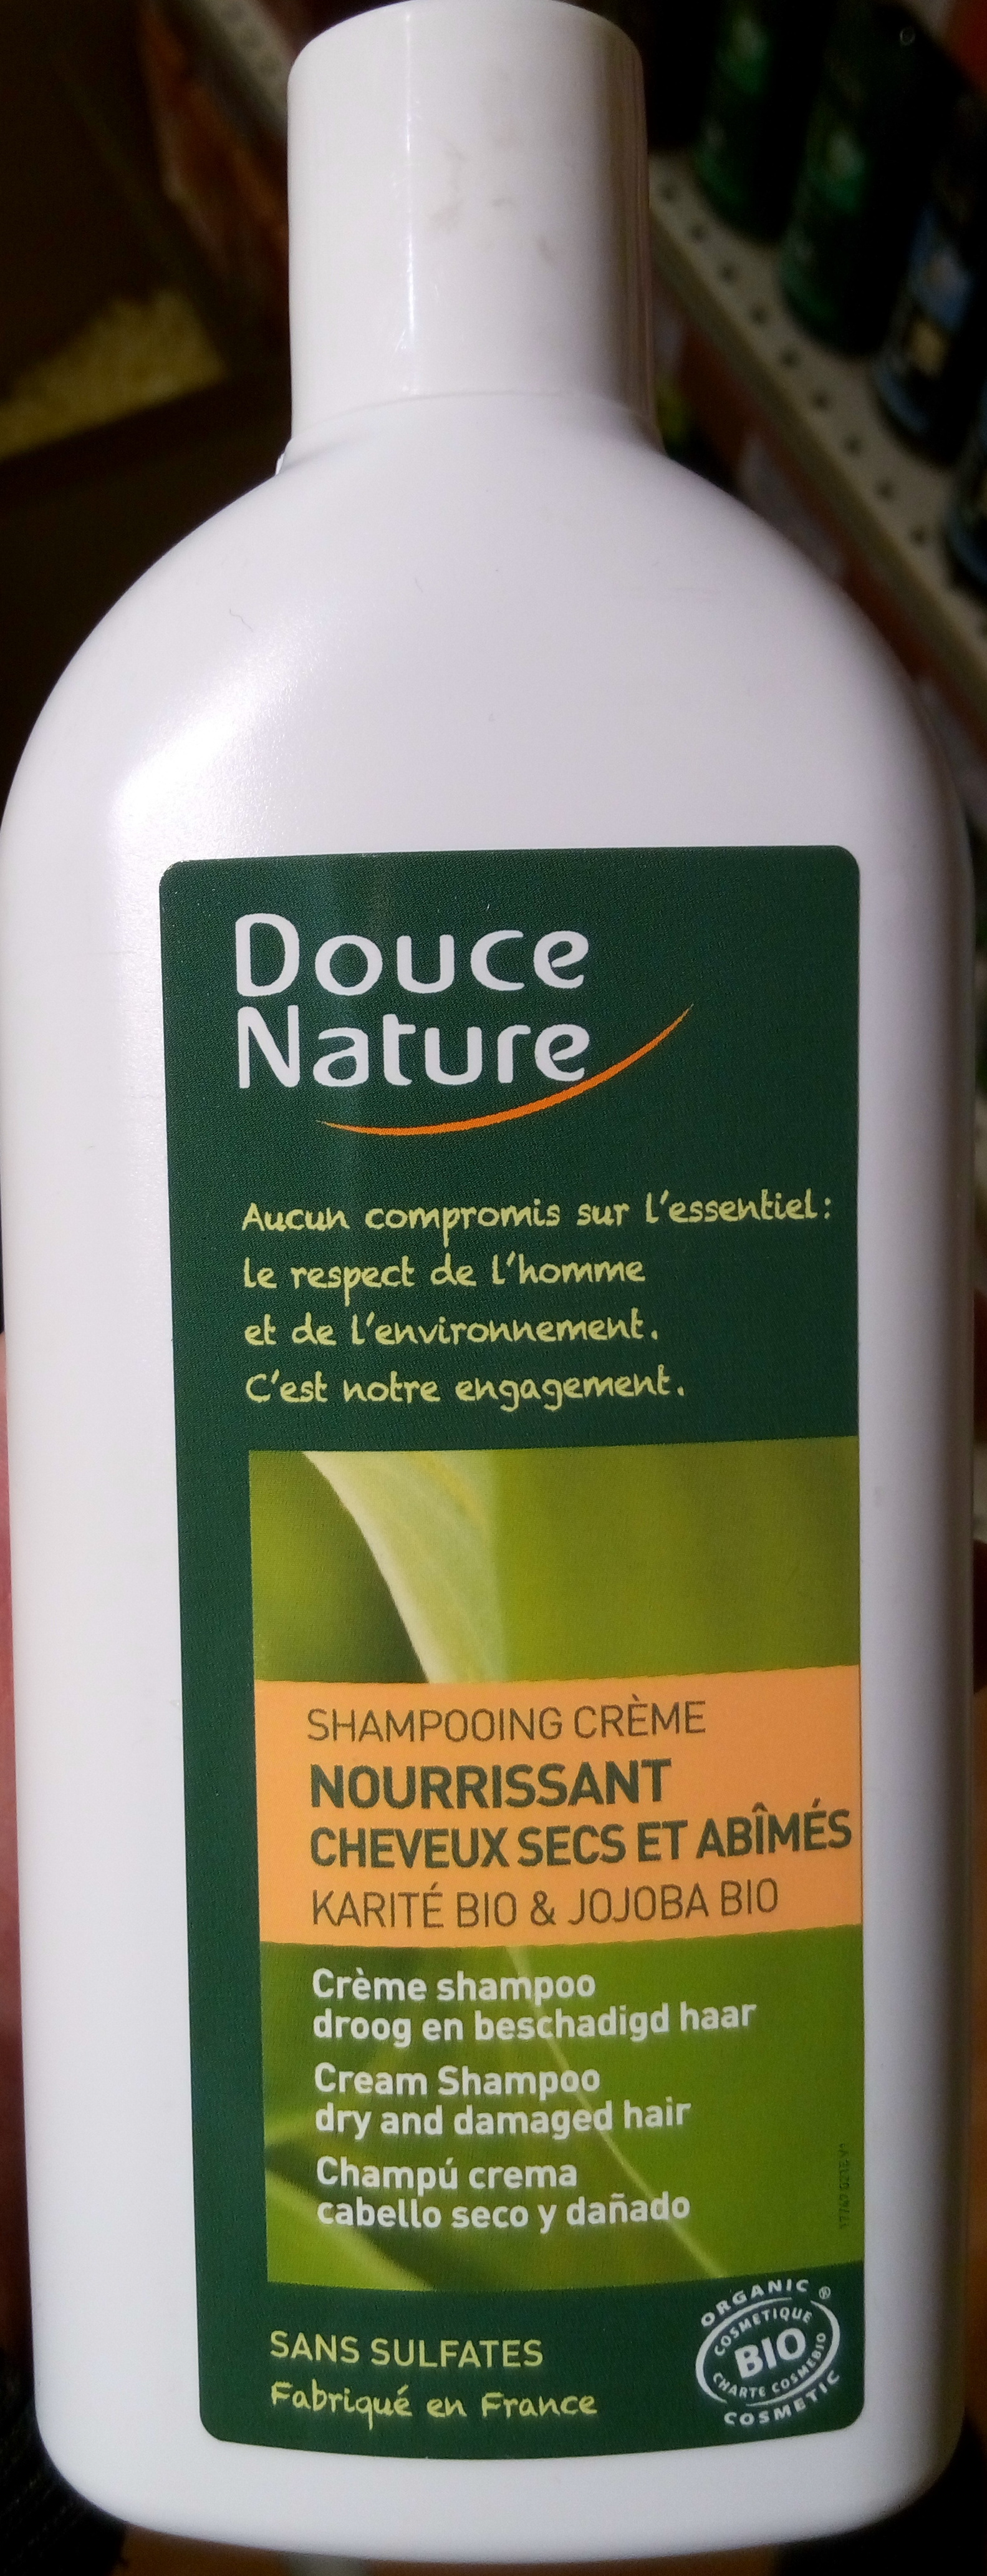 Shampooing crème nourrissant cheveux secs et abîmées au karité bio & jojoba bio - Product - fr